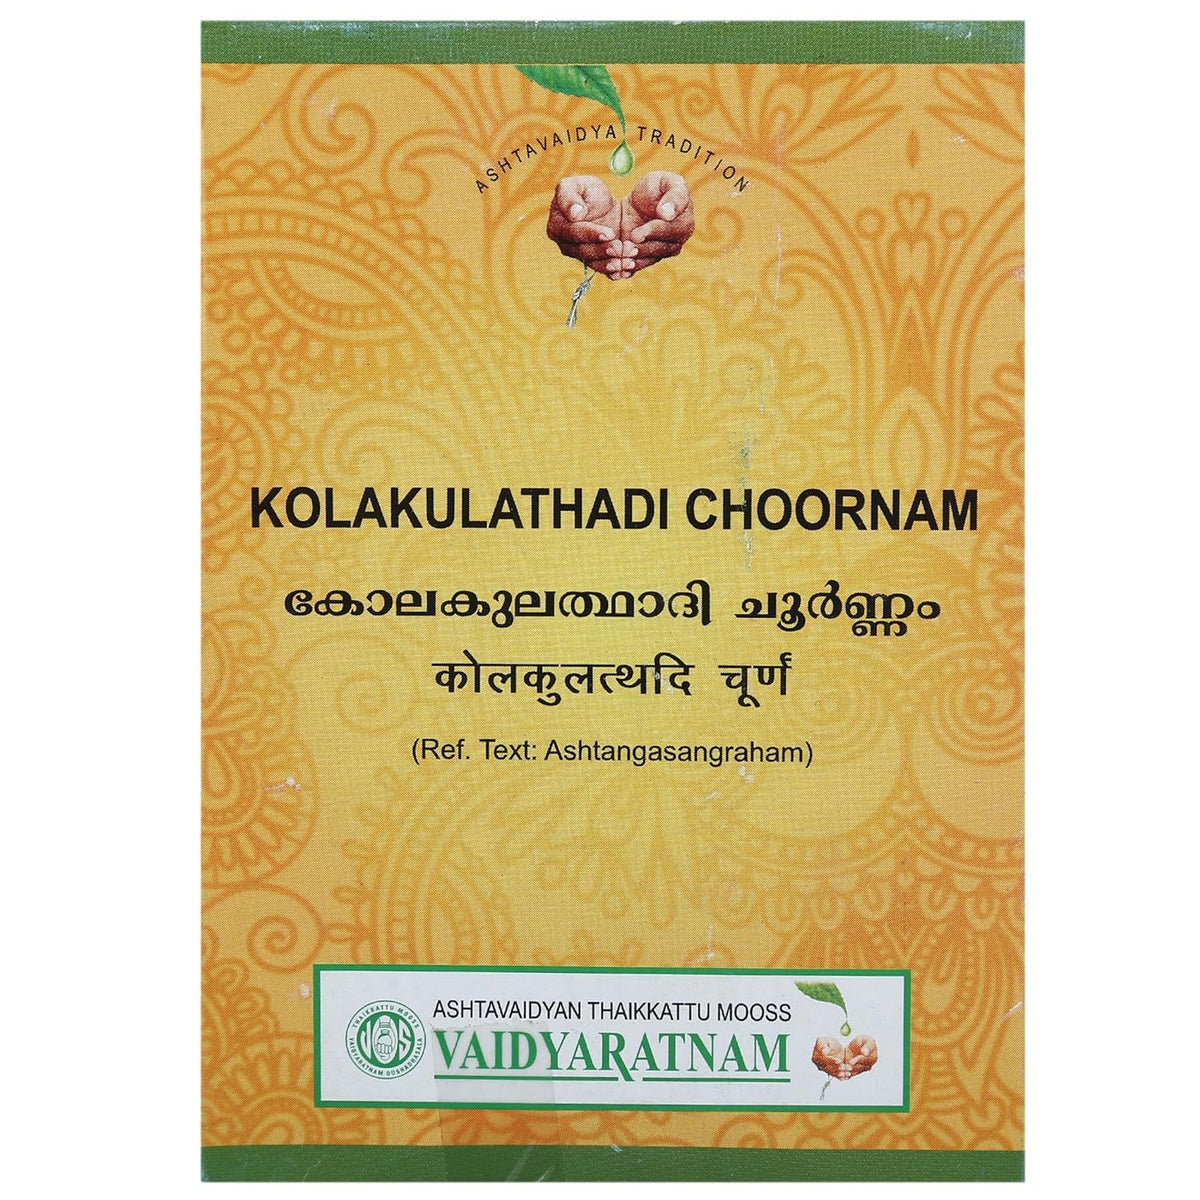 Vaidyaratnam Ayurvedic Kolakulathadi Choornam Powder